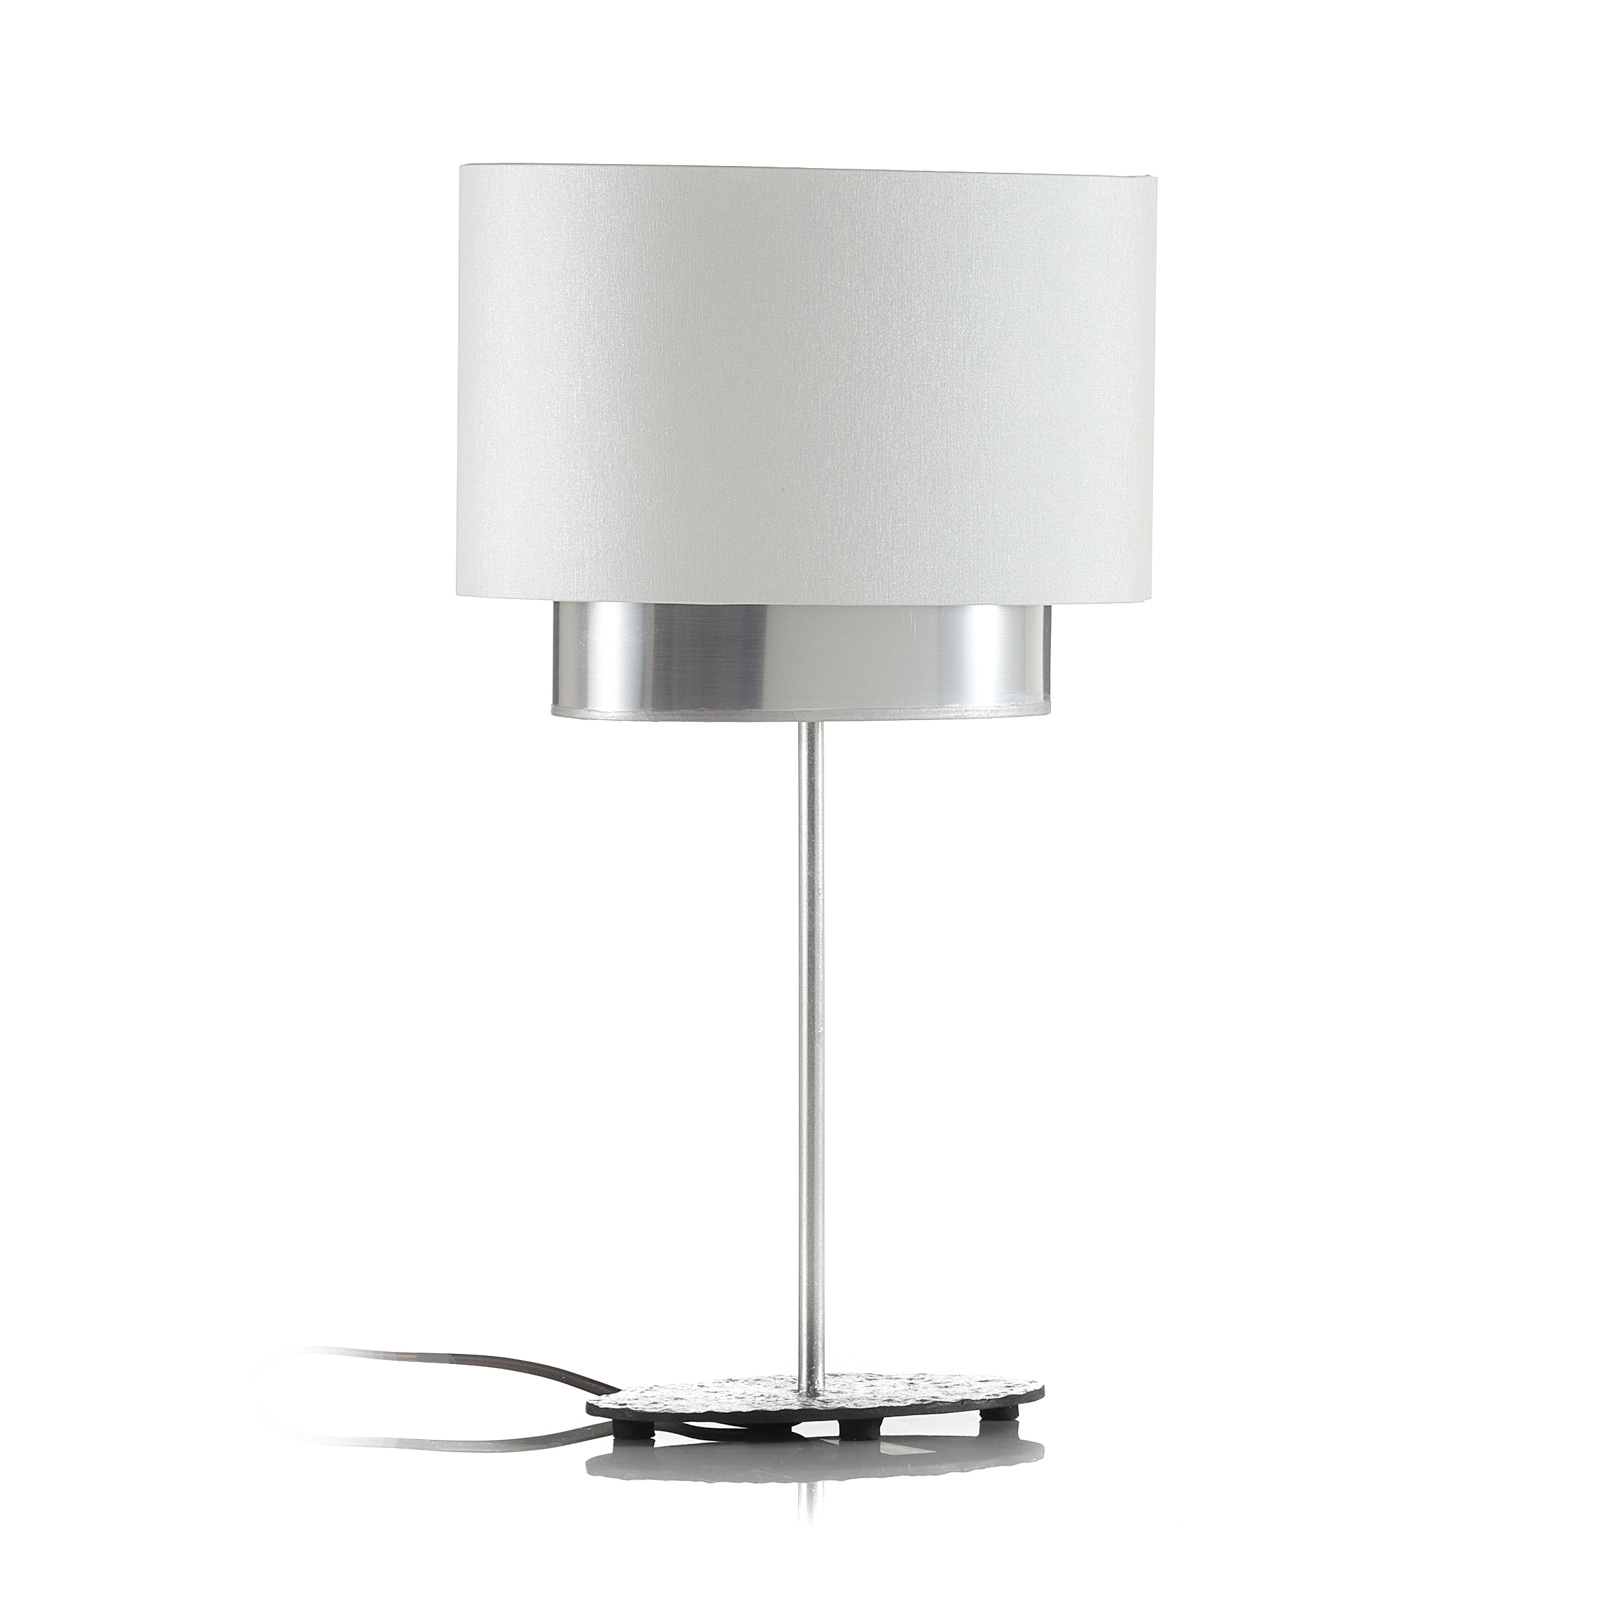 Pöytälamppu Mattia, ovaali, valkoinen/hopea